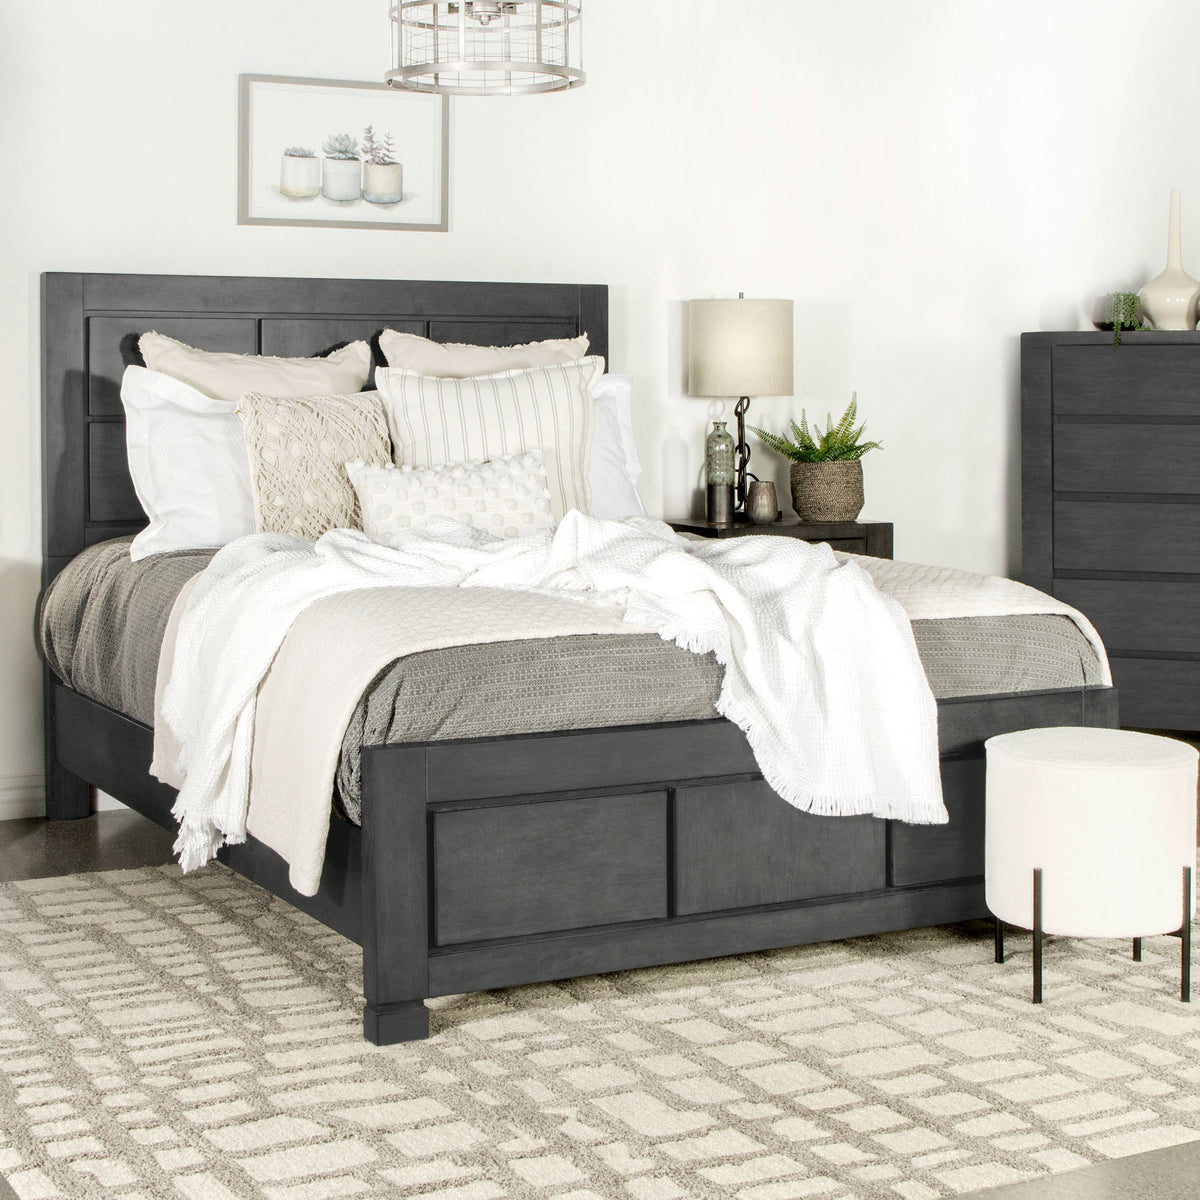 Lorenzo Rectangular Panel Bed Dark Grey - Half Price Furniture